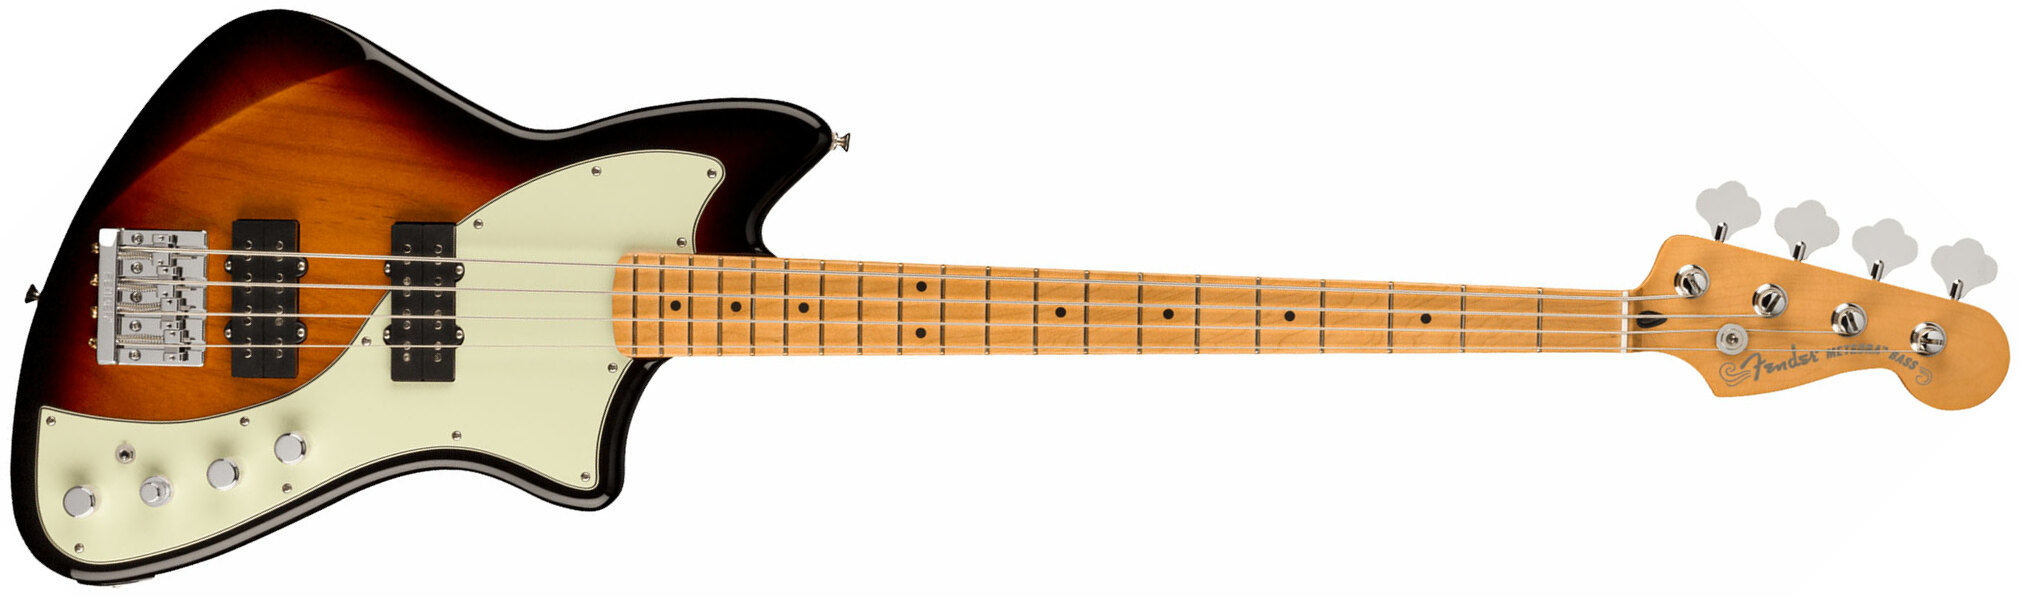 Fender Meteora Bass Active Player Plus Mex Mn - 3-color Sunburst - Basse Électrique Solid Body - Main picture